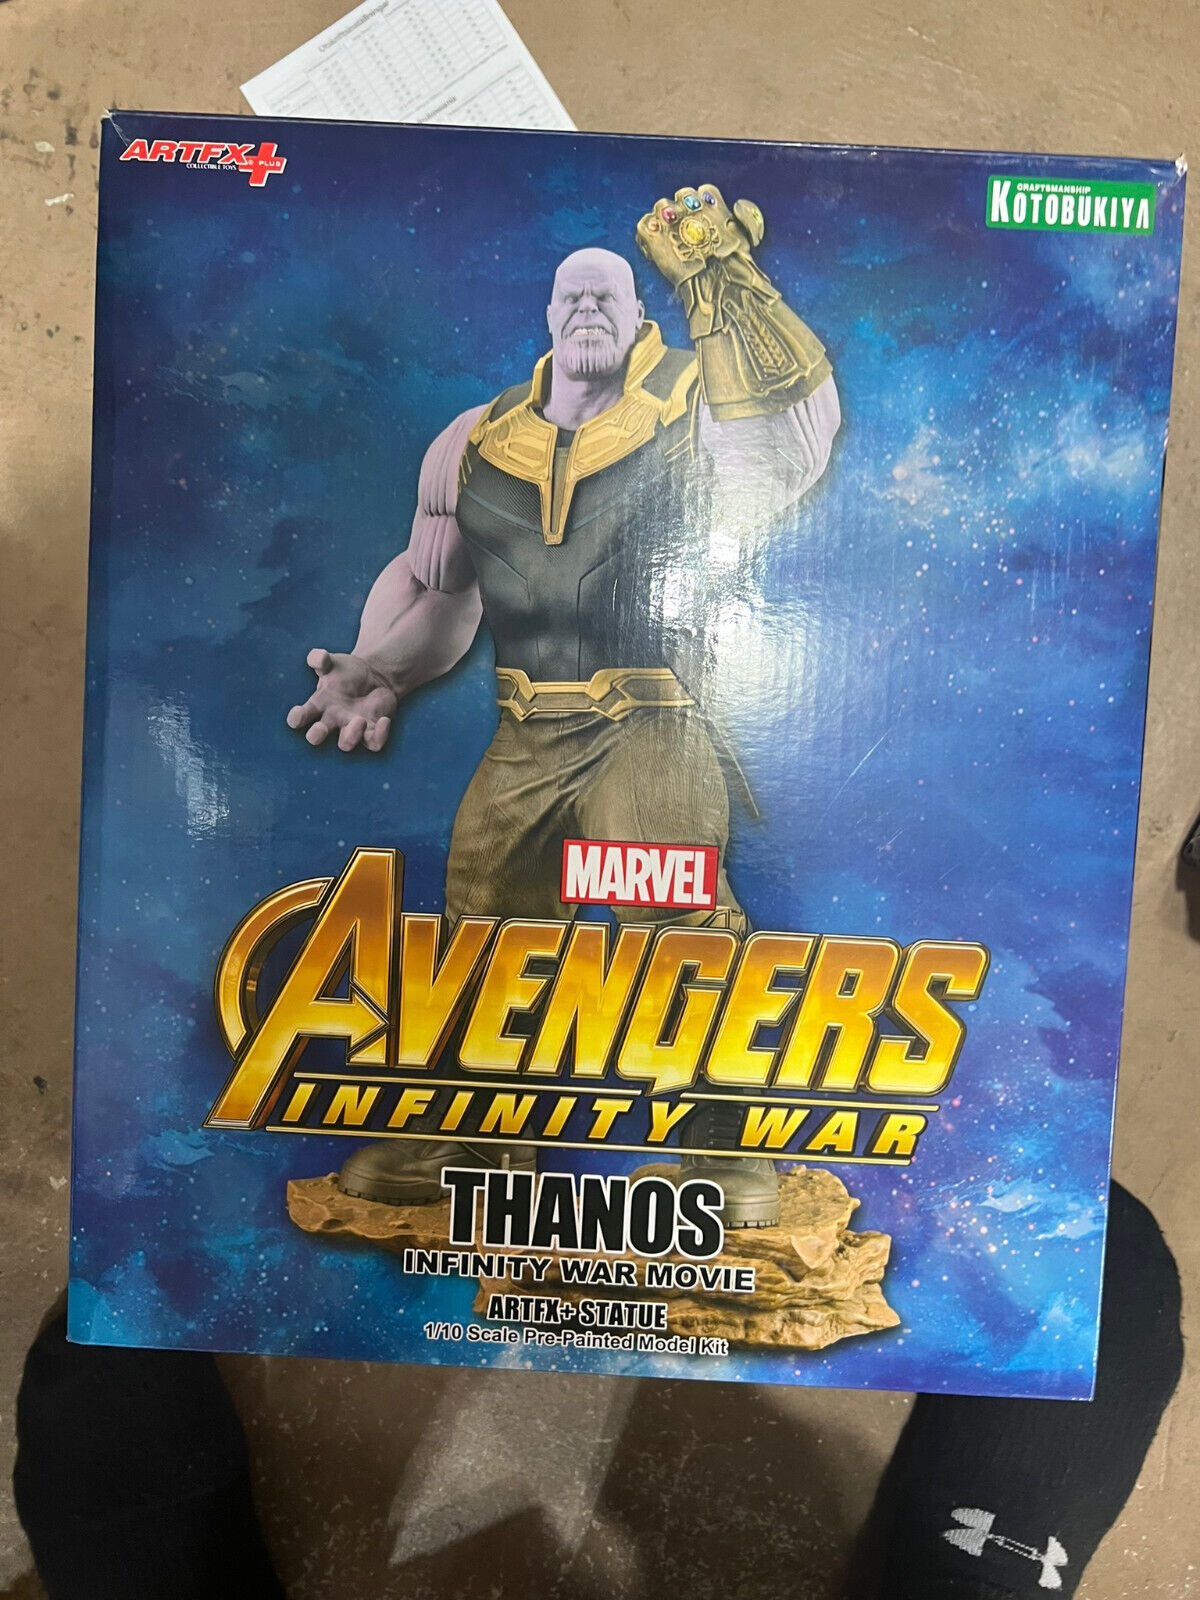 Kotobukiya ArtFX Infinity War Thanos Statue